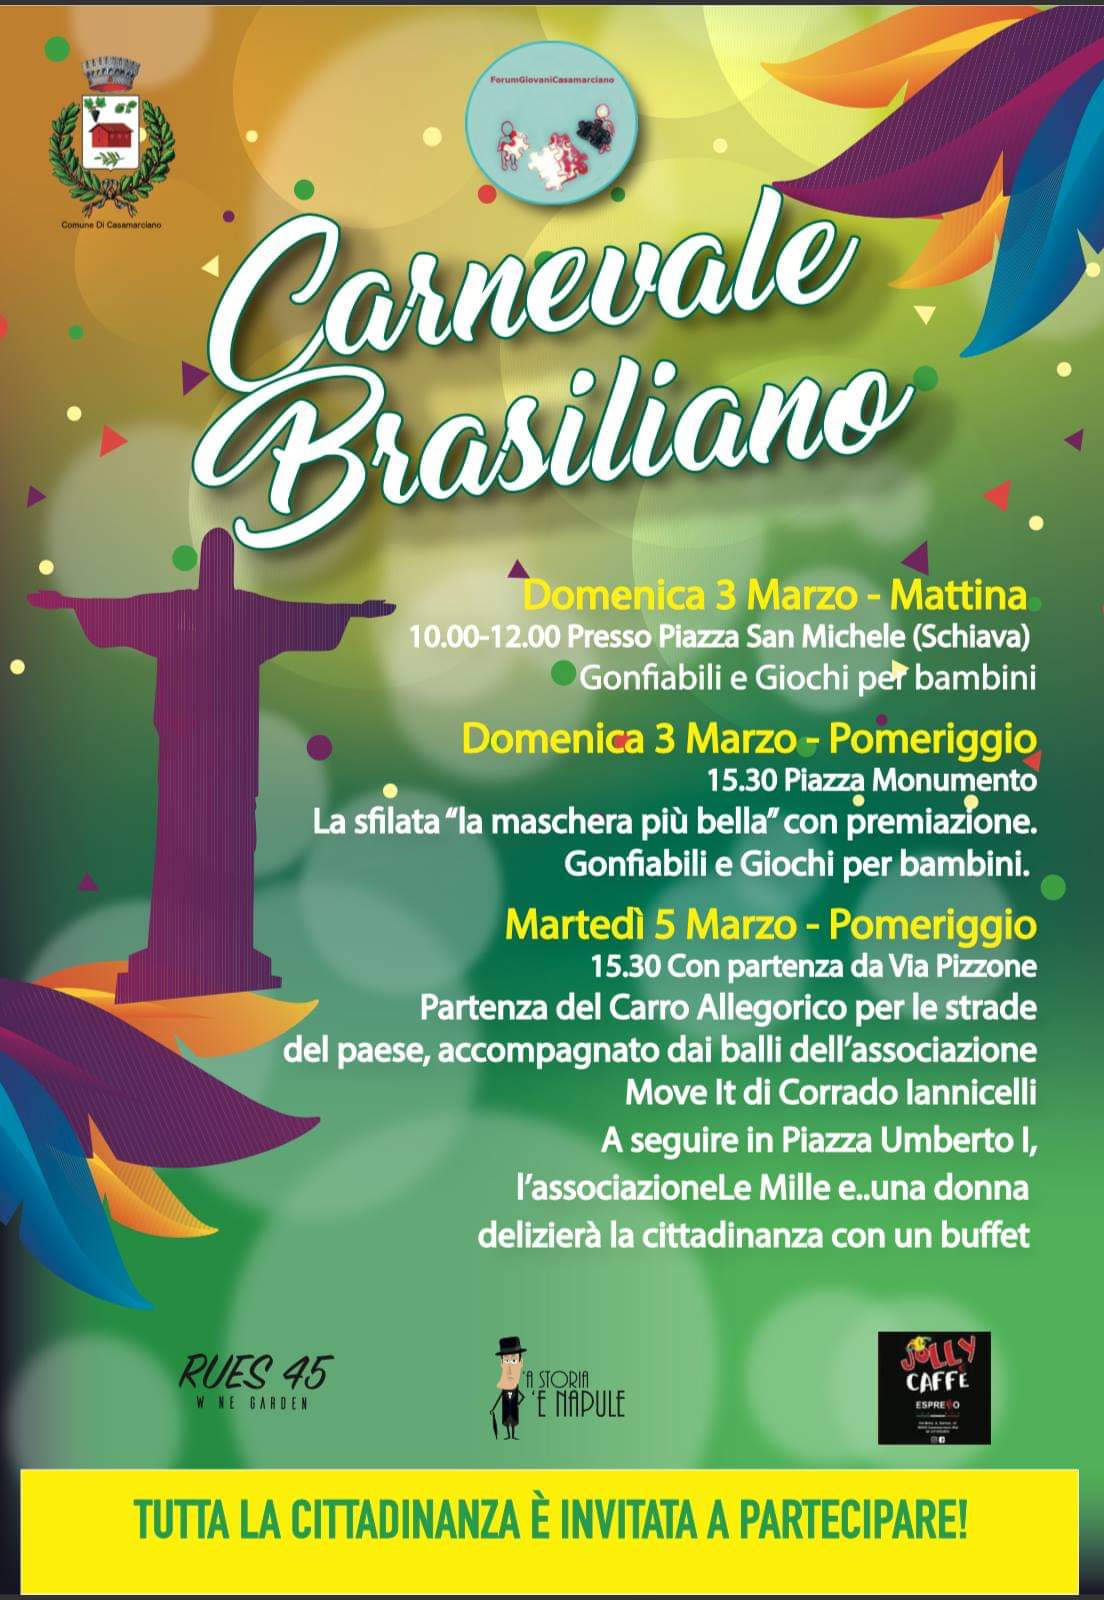 Carnevale brasiliano: a Casamarciano al via la IV edizione tra musica e colori